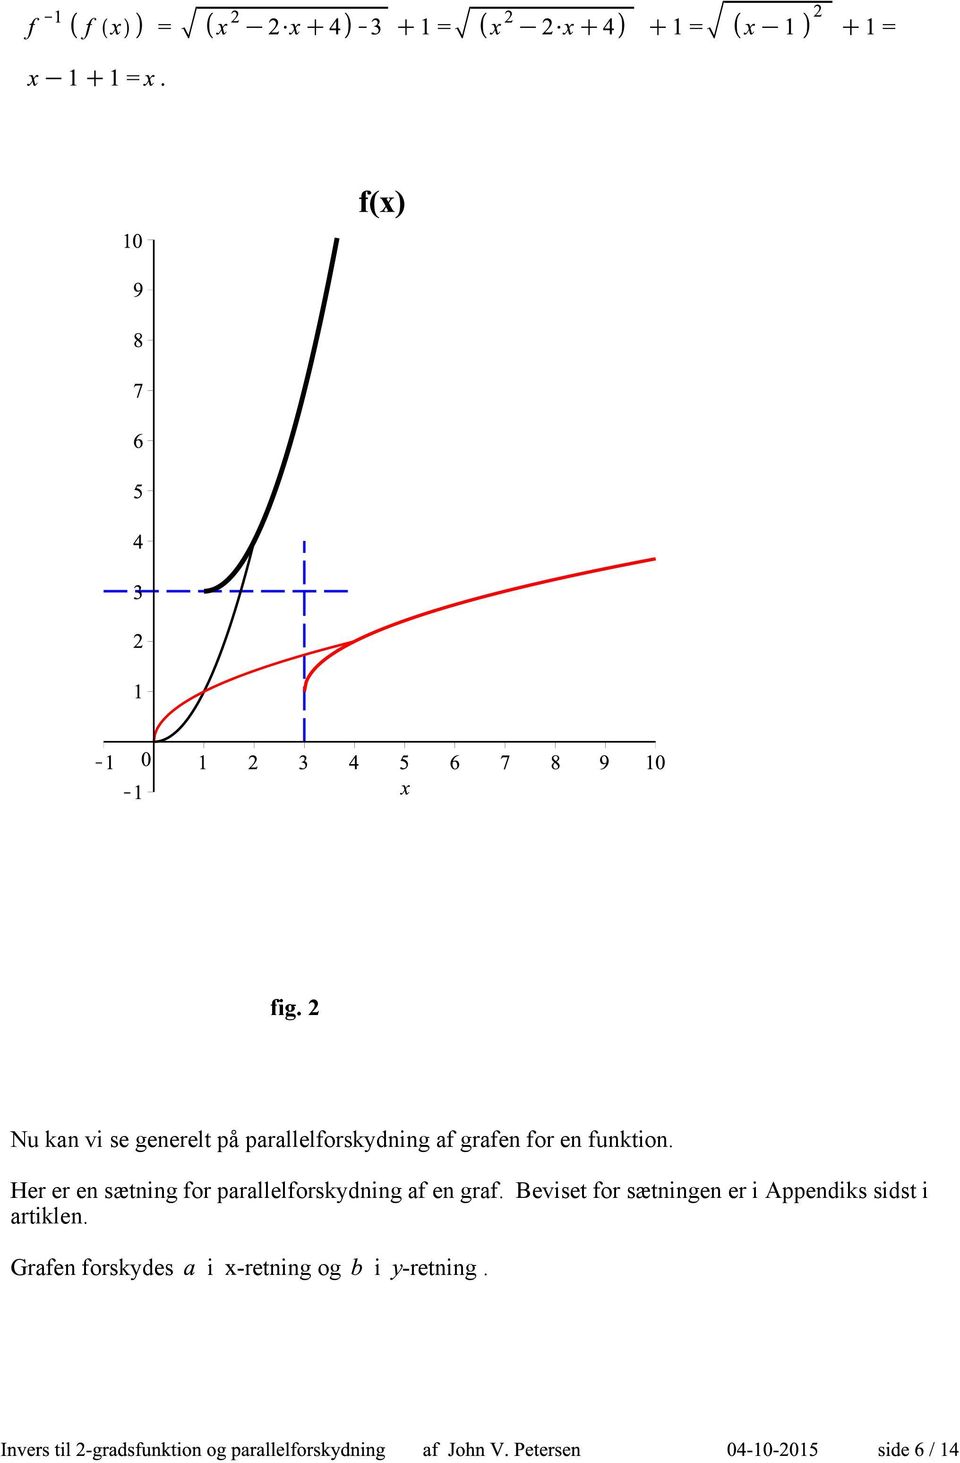 Her er en sætning for parallelforskydning af en graf.